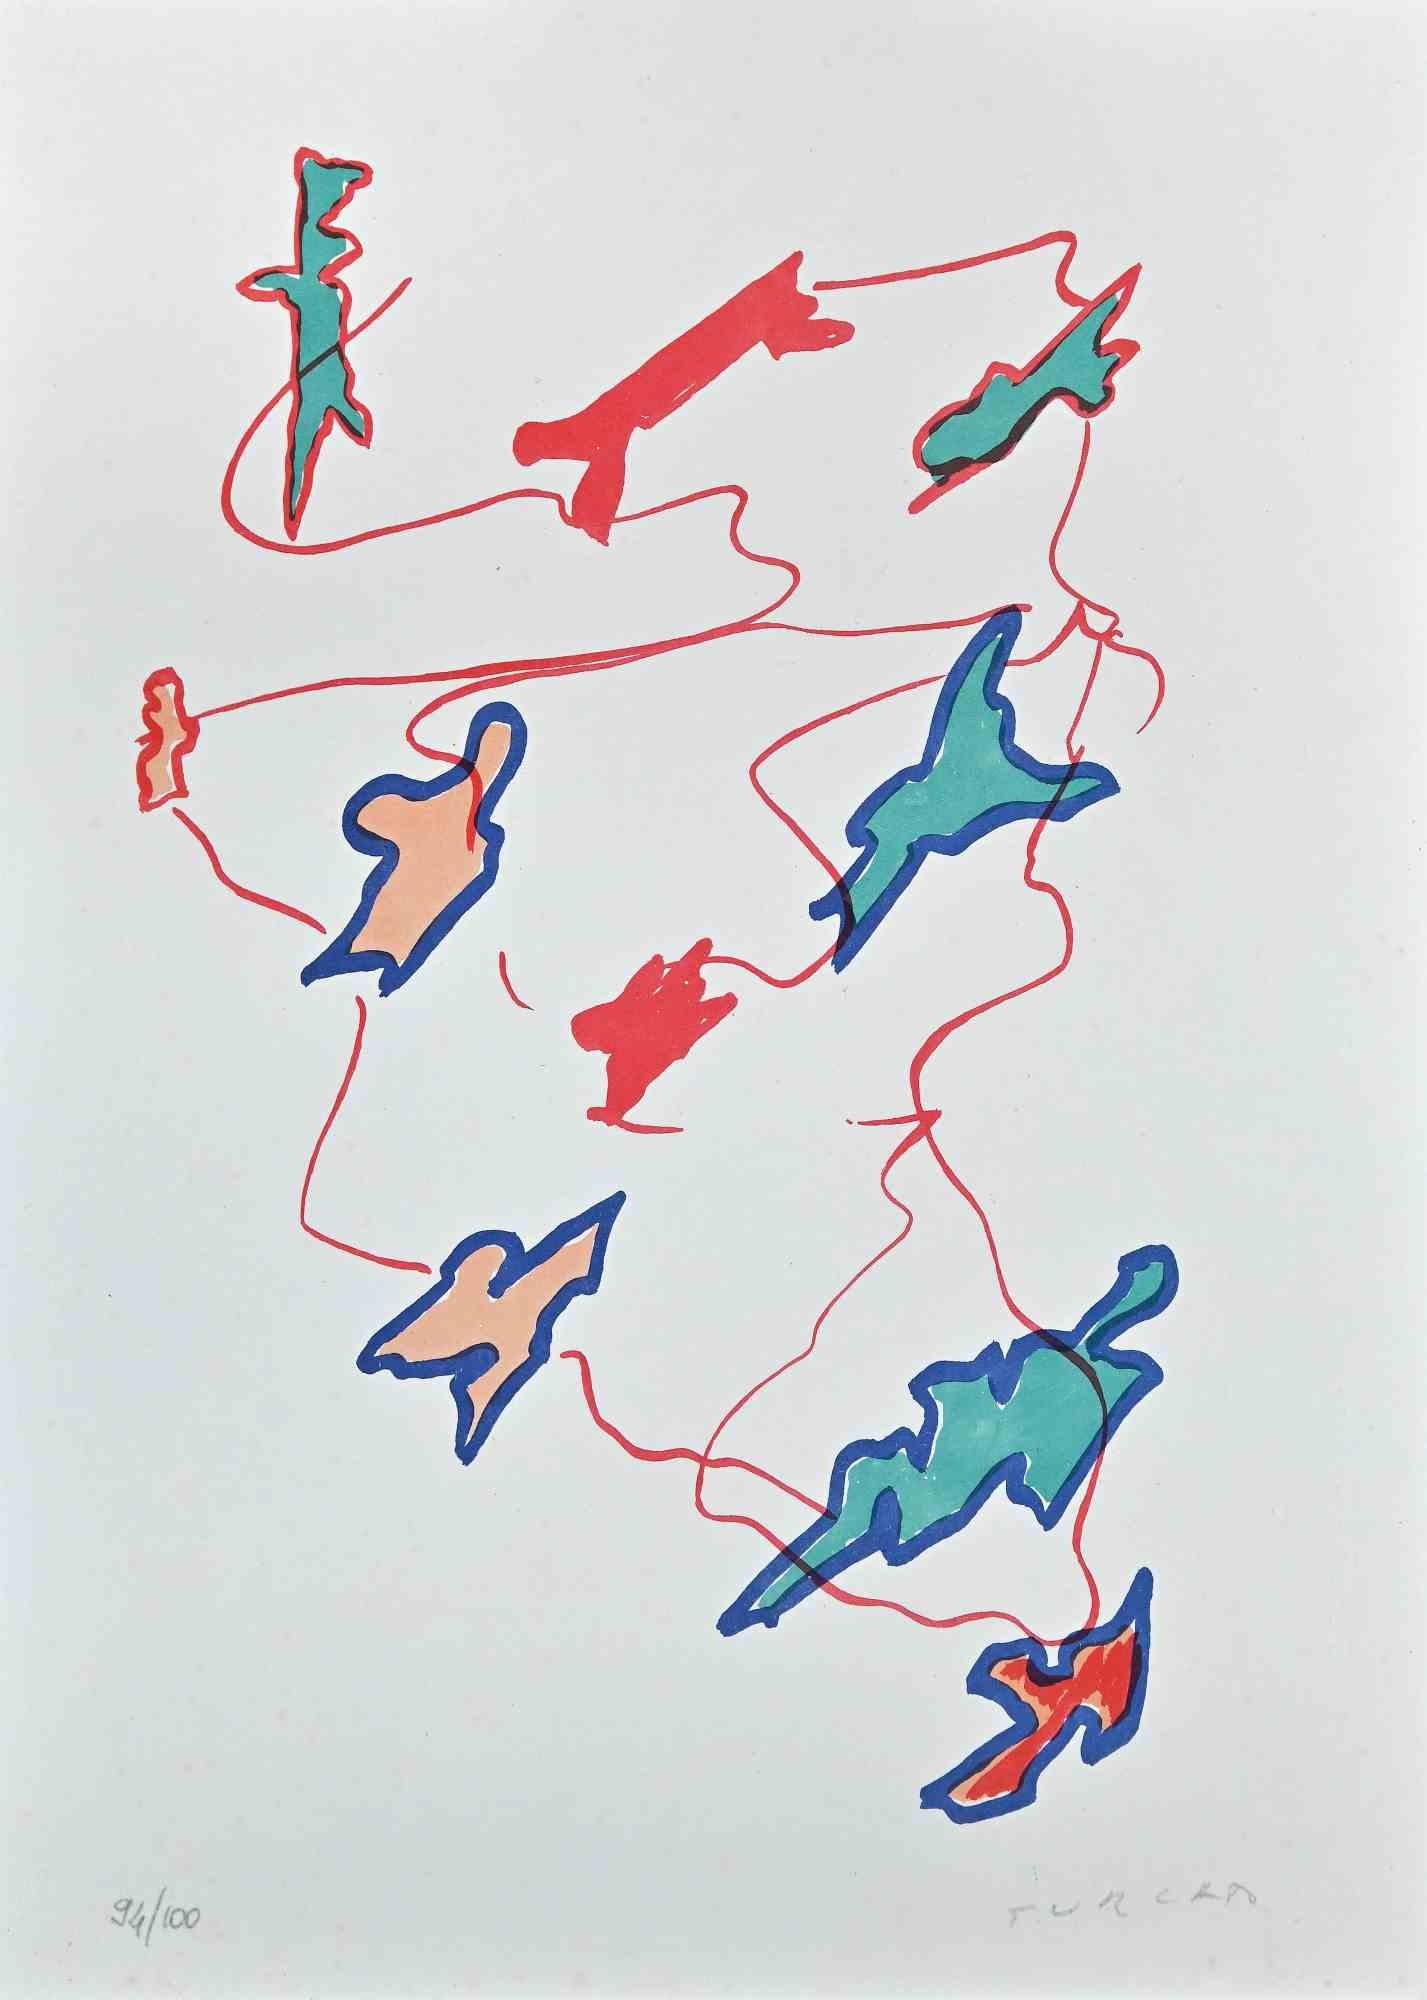 Leaves est une sérigraphie colorée réalisée par l'artiste contemporain Giulio Turcato 1973.

Signé à la main au crayon en bas à droite.

Numéroté. Edition, 94/100.

Etiquette d'authenticité de La Nuova Foglio au dos. 

Bonnes conditions

Libérez